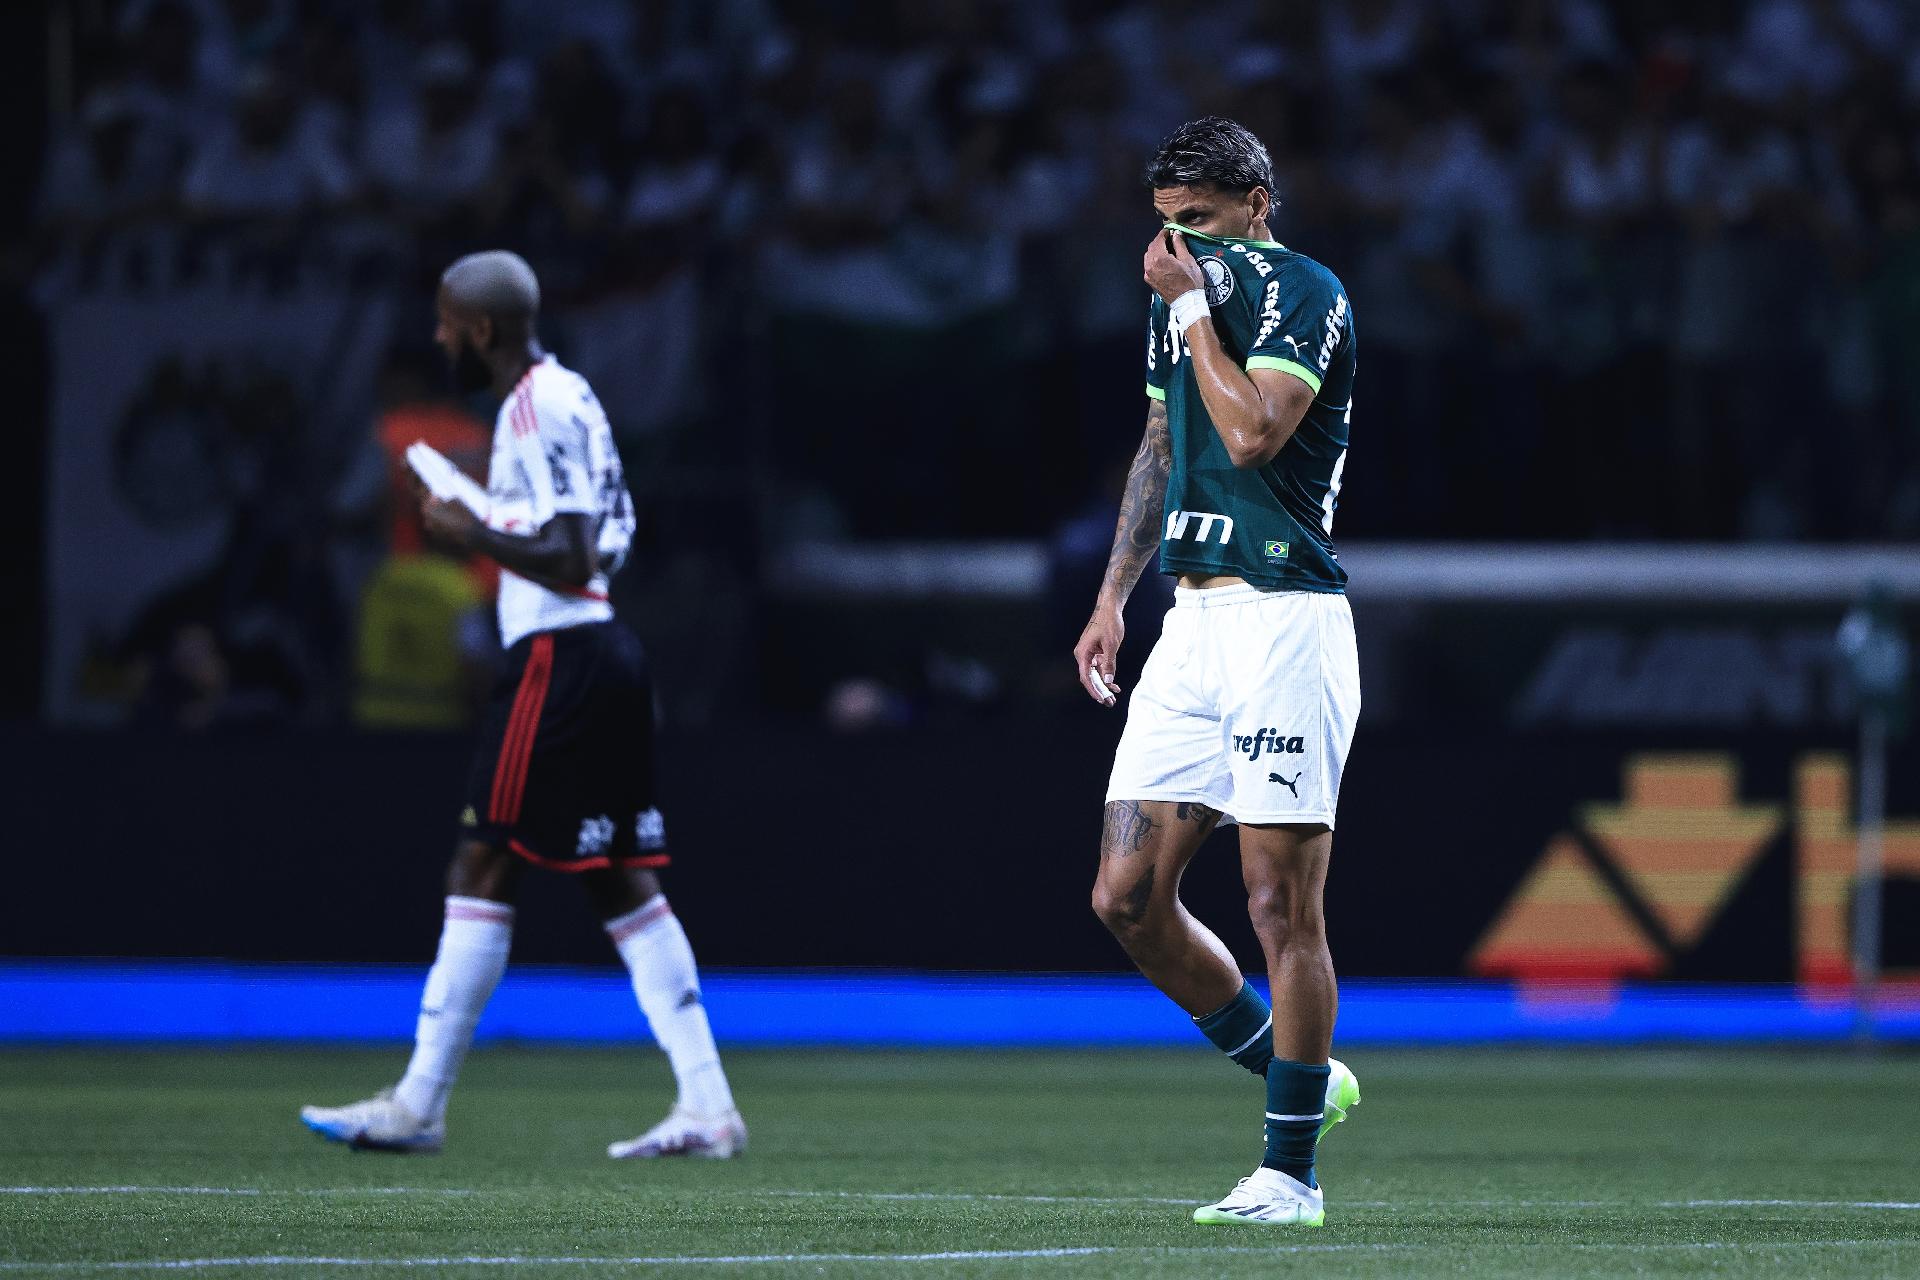 Série A: Palmeiras e Flamengo empatam em jogão no Allianz Parque - Notícias  - Galáticos Online